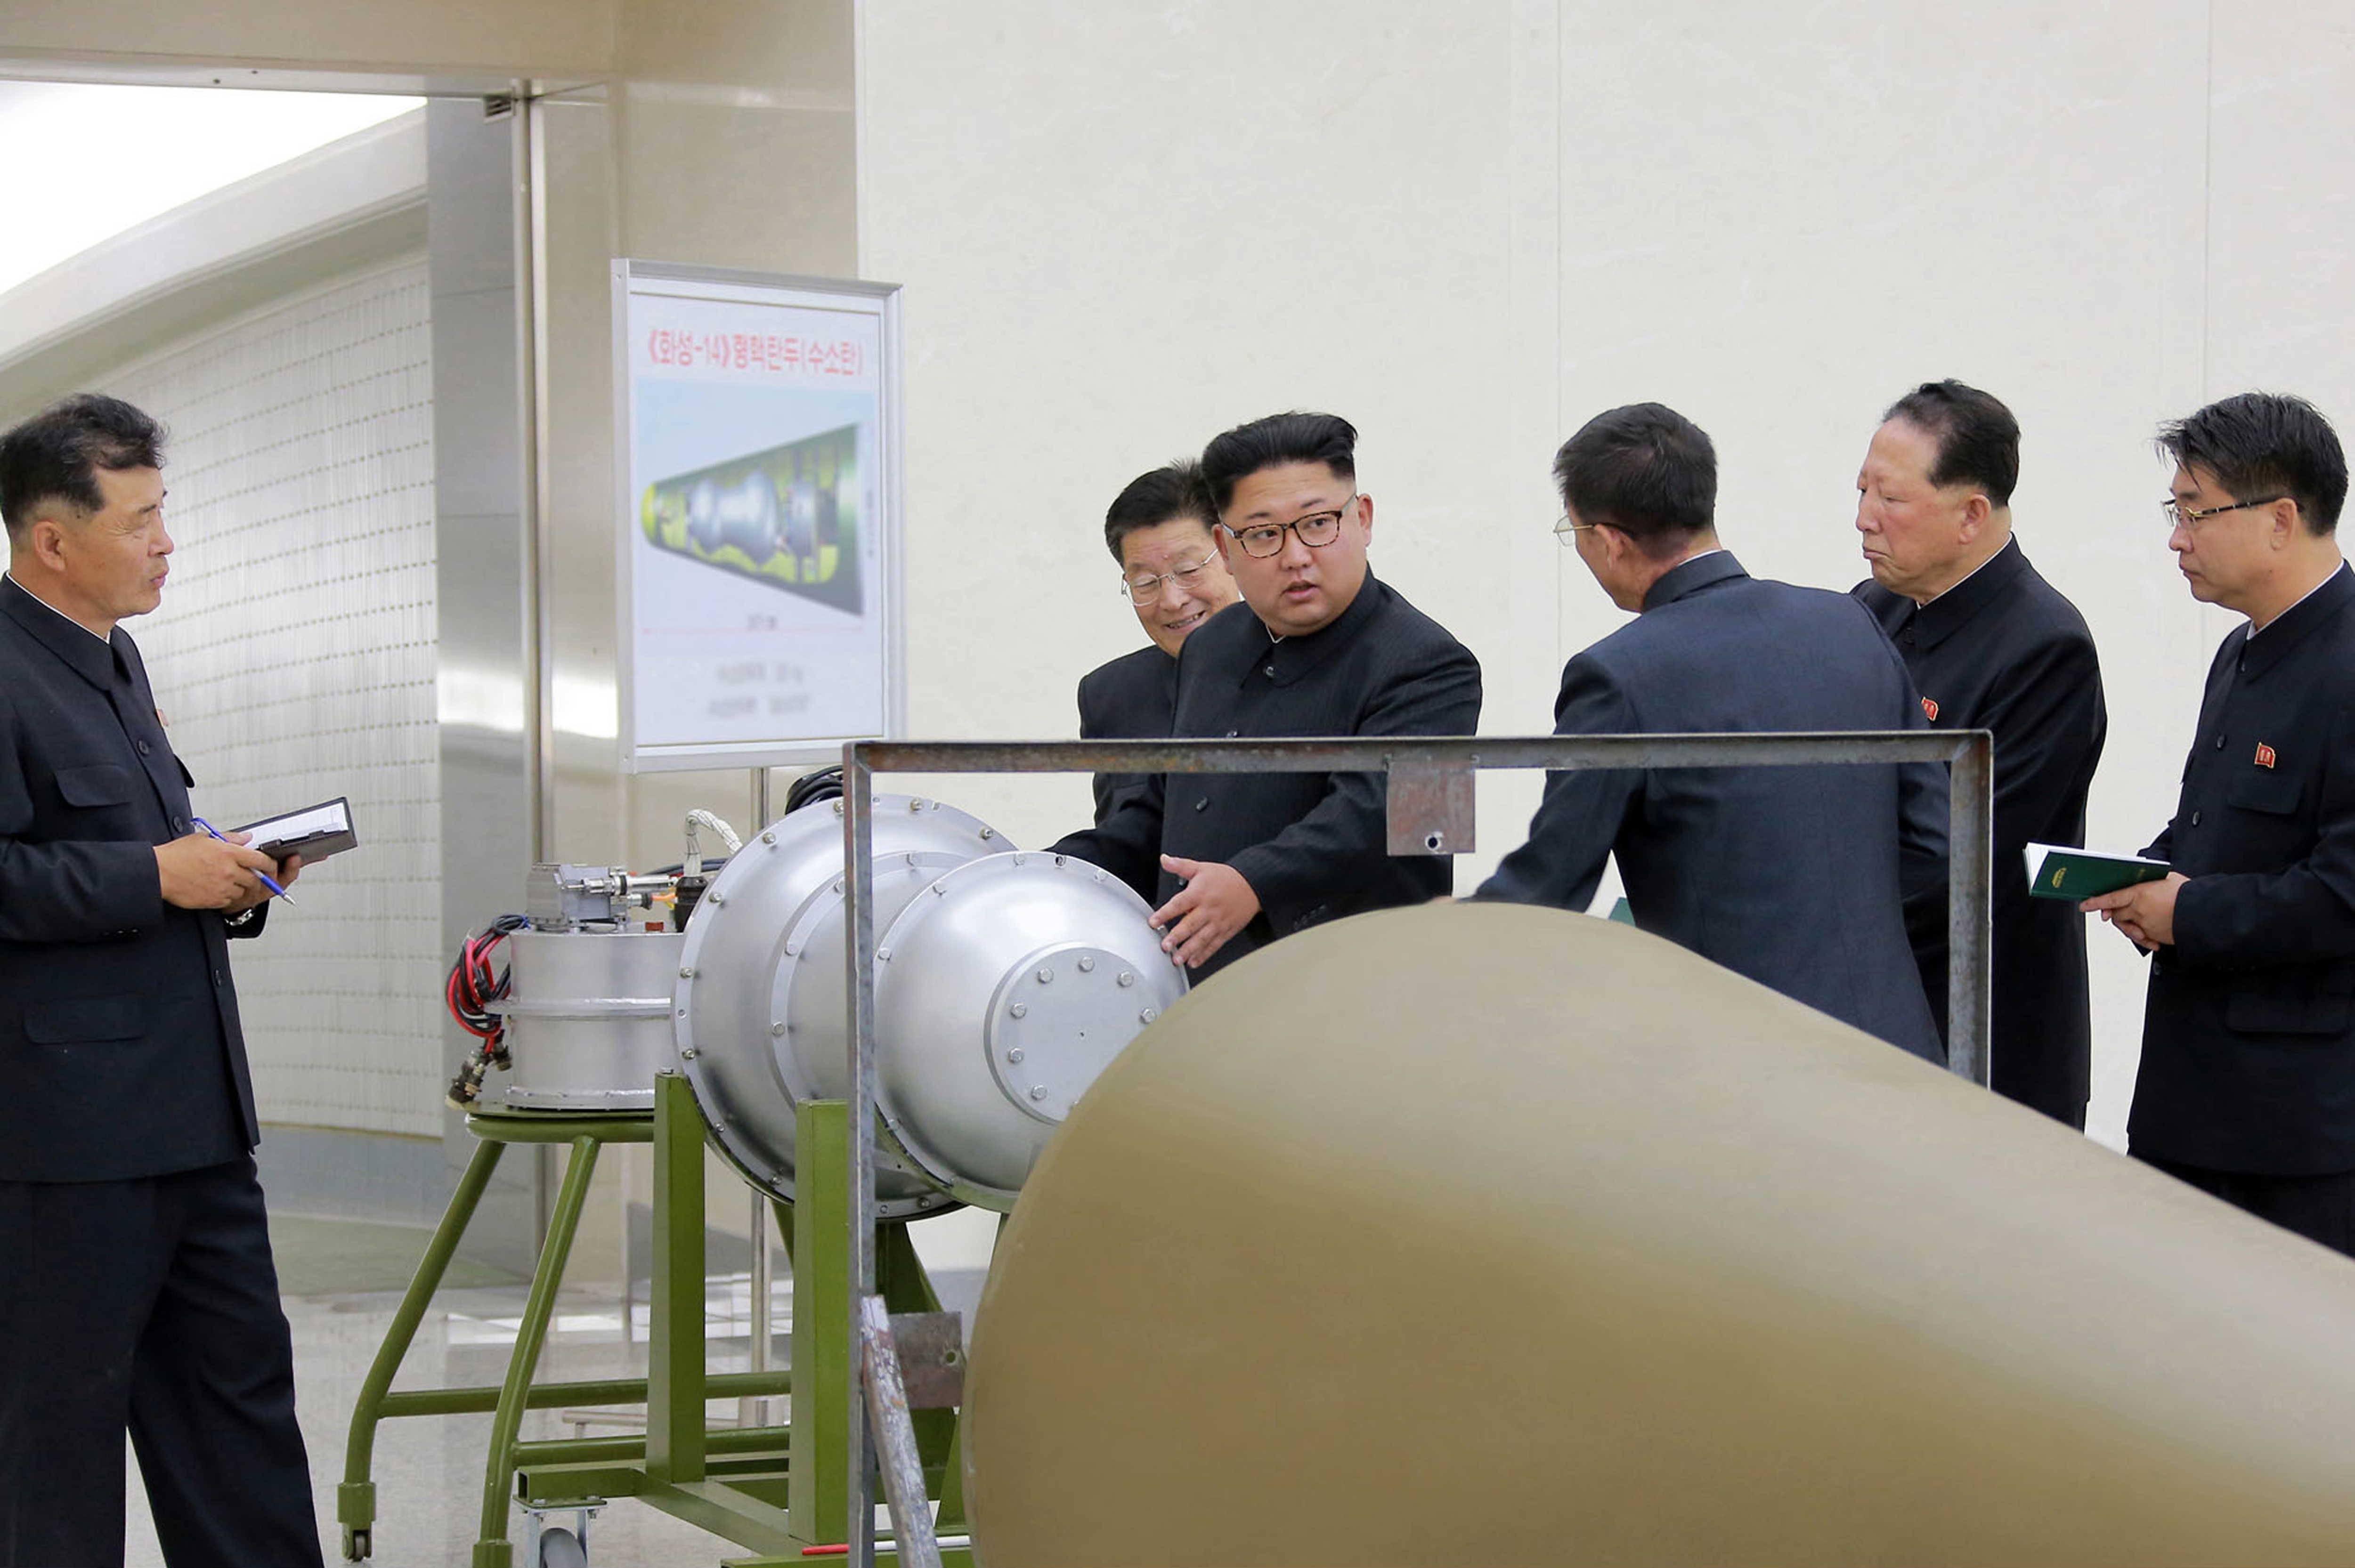 Ким инспектира новото устройство за ракета-носител, за което се твърди, че е водородна бомба